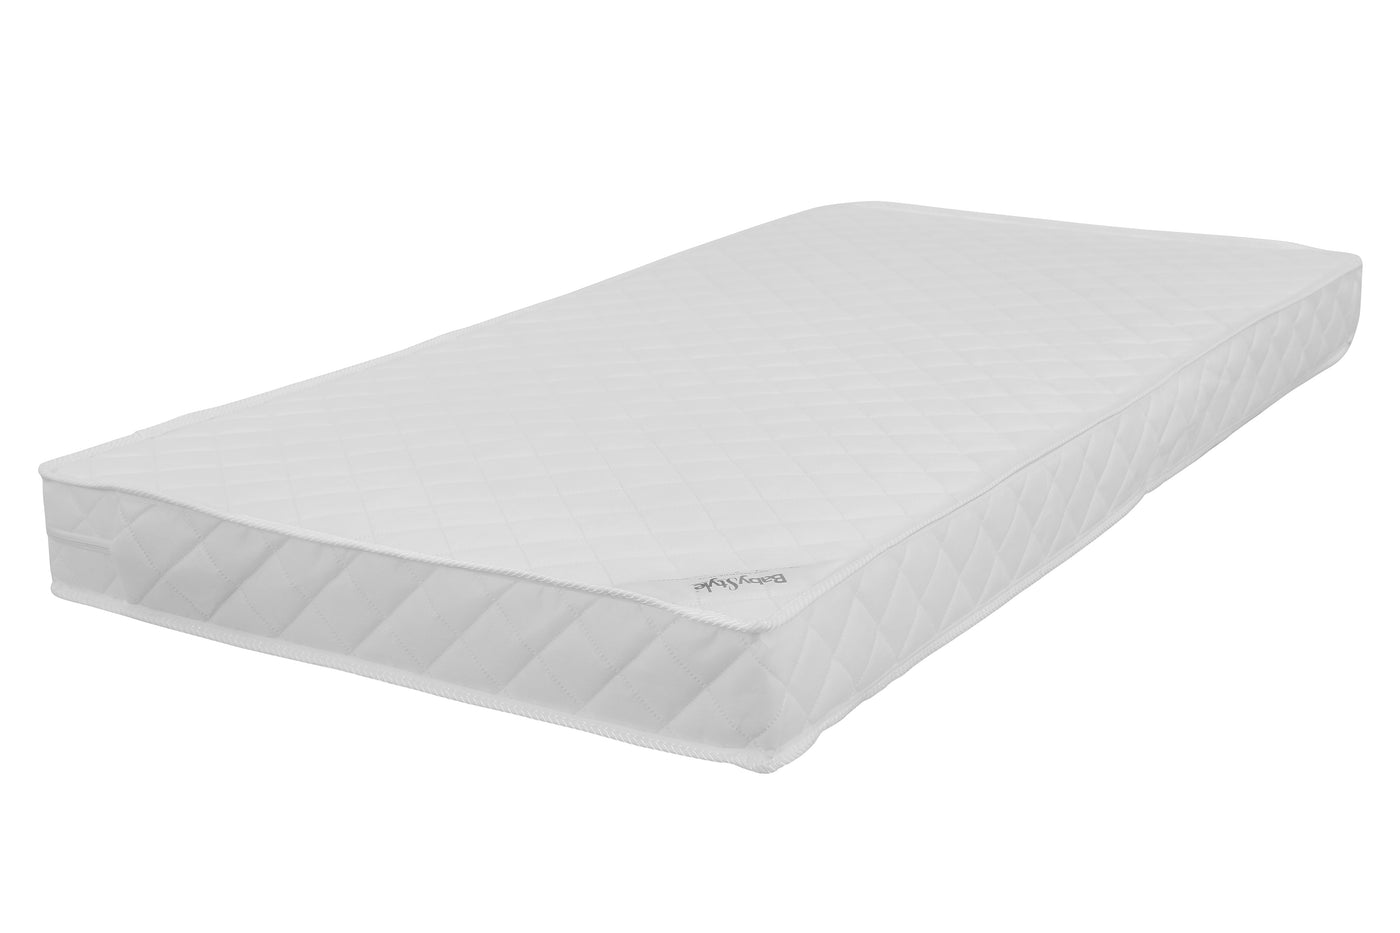 Babystyle Dream Cot Bed Sprung Mattress (140 x 70cm)